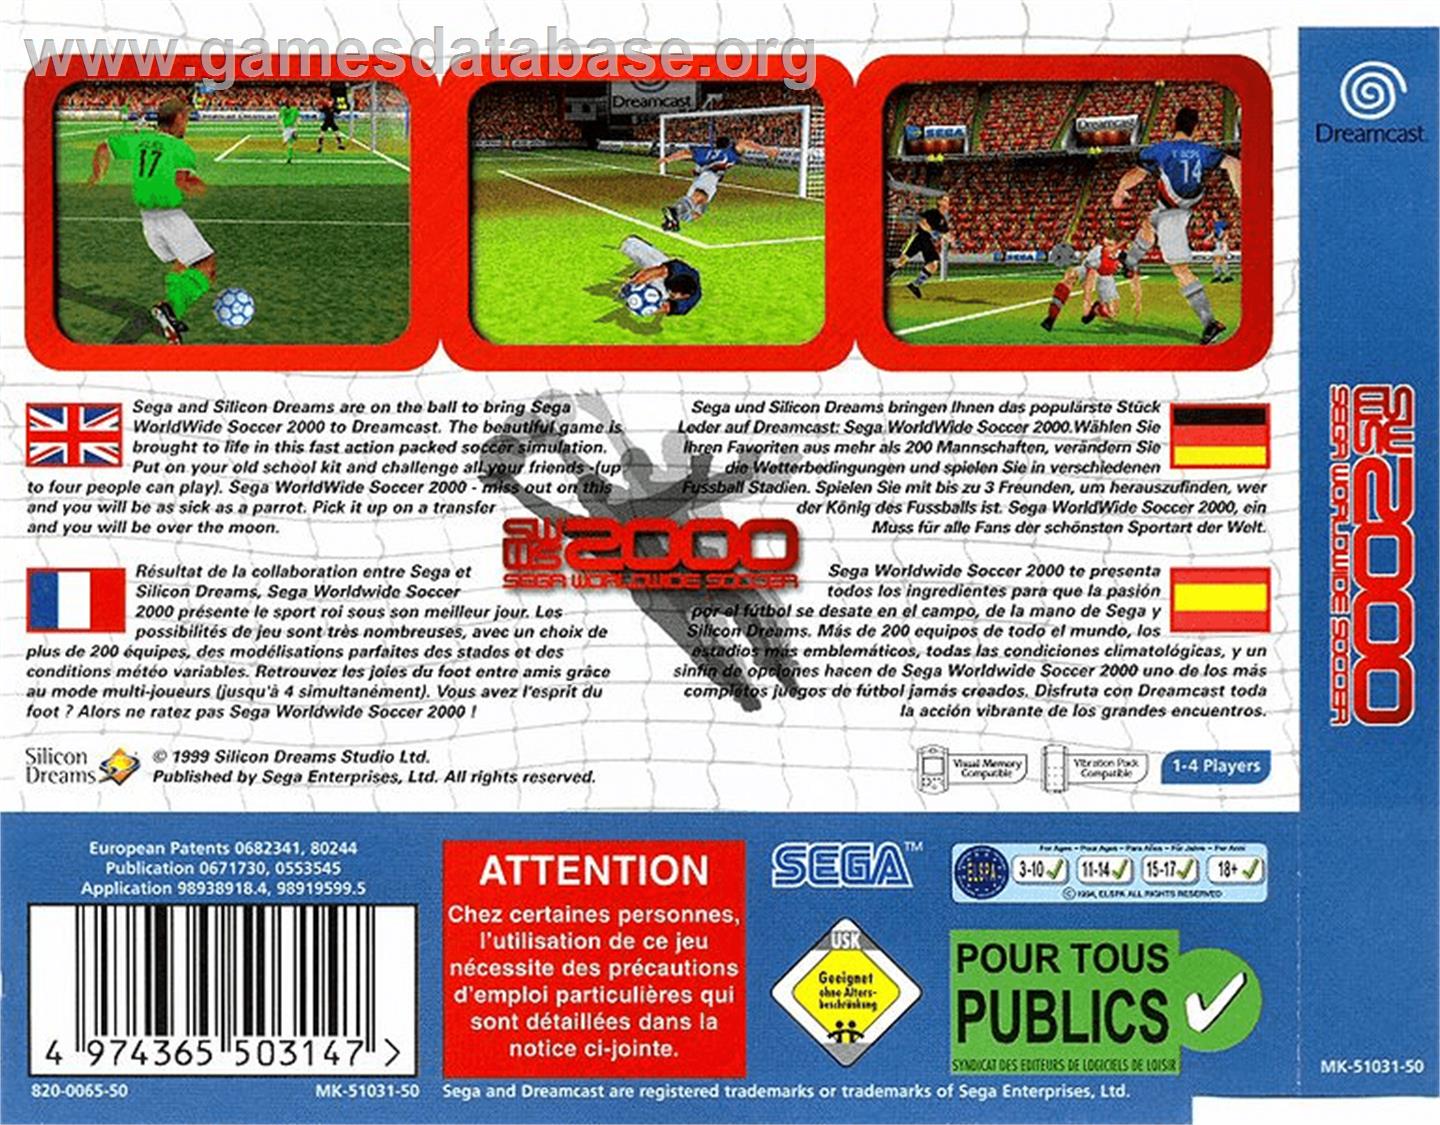 Worldwide Soccer 2000 - Sega Dreamcast - Artwork - Box Back